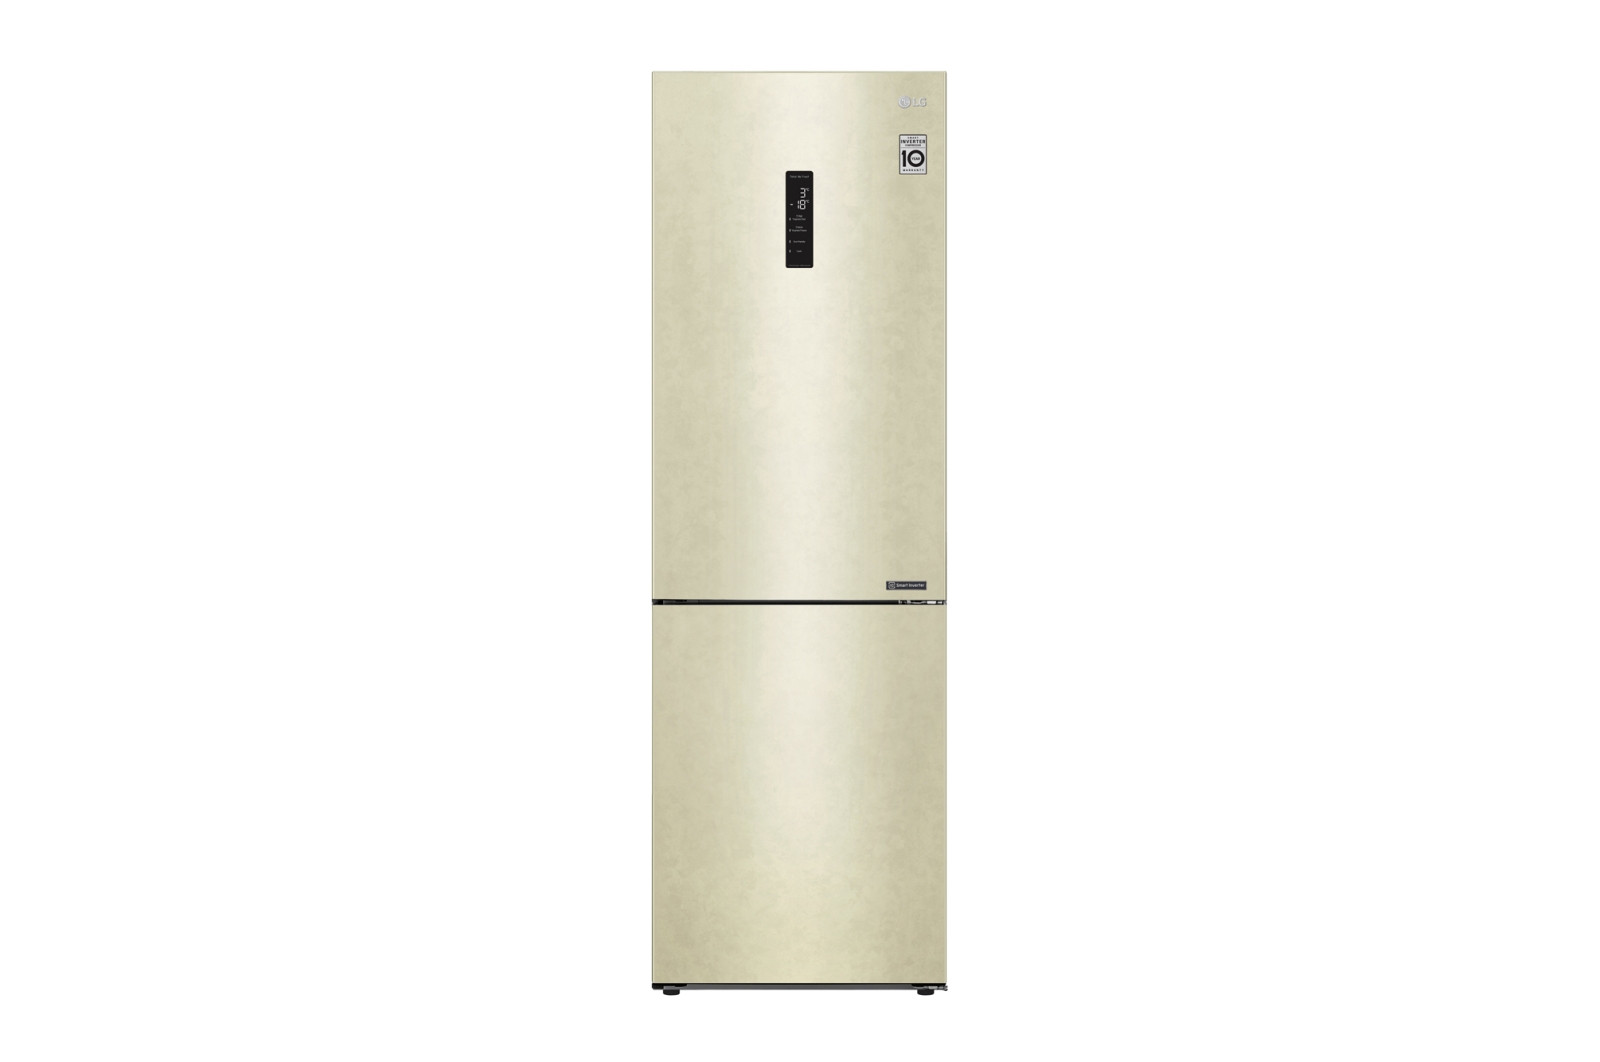 Двухкамерный холодильник LG GA-B459CESL																		 — описание, фото, цены в интернет-магазине Премьер Техно